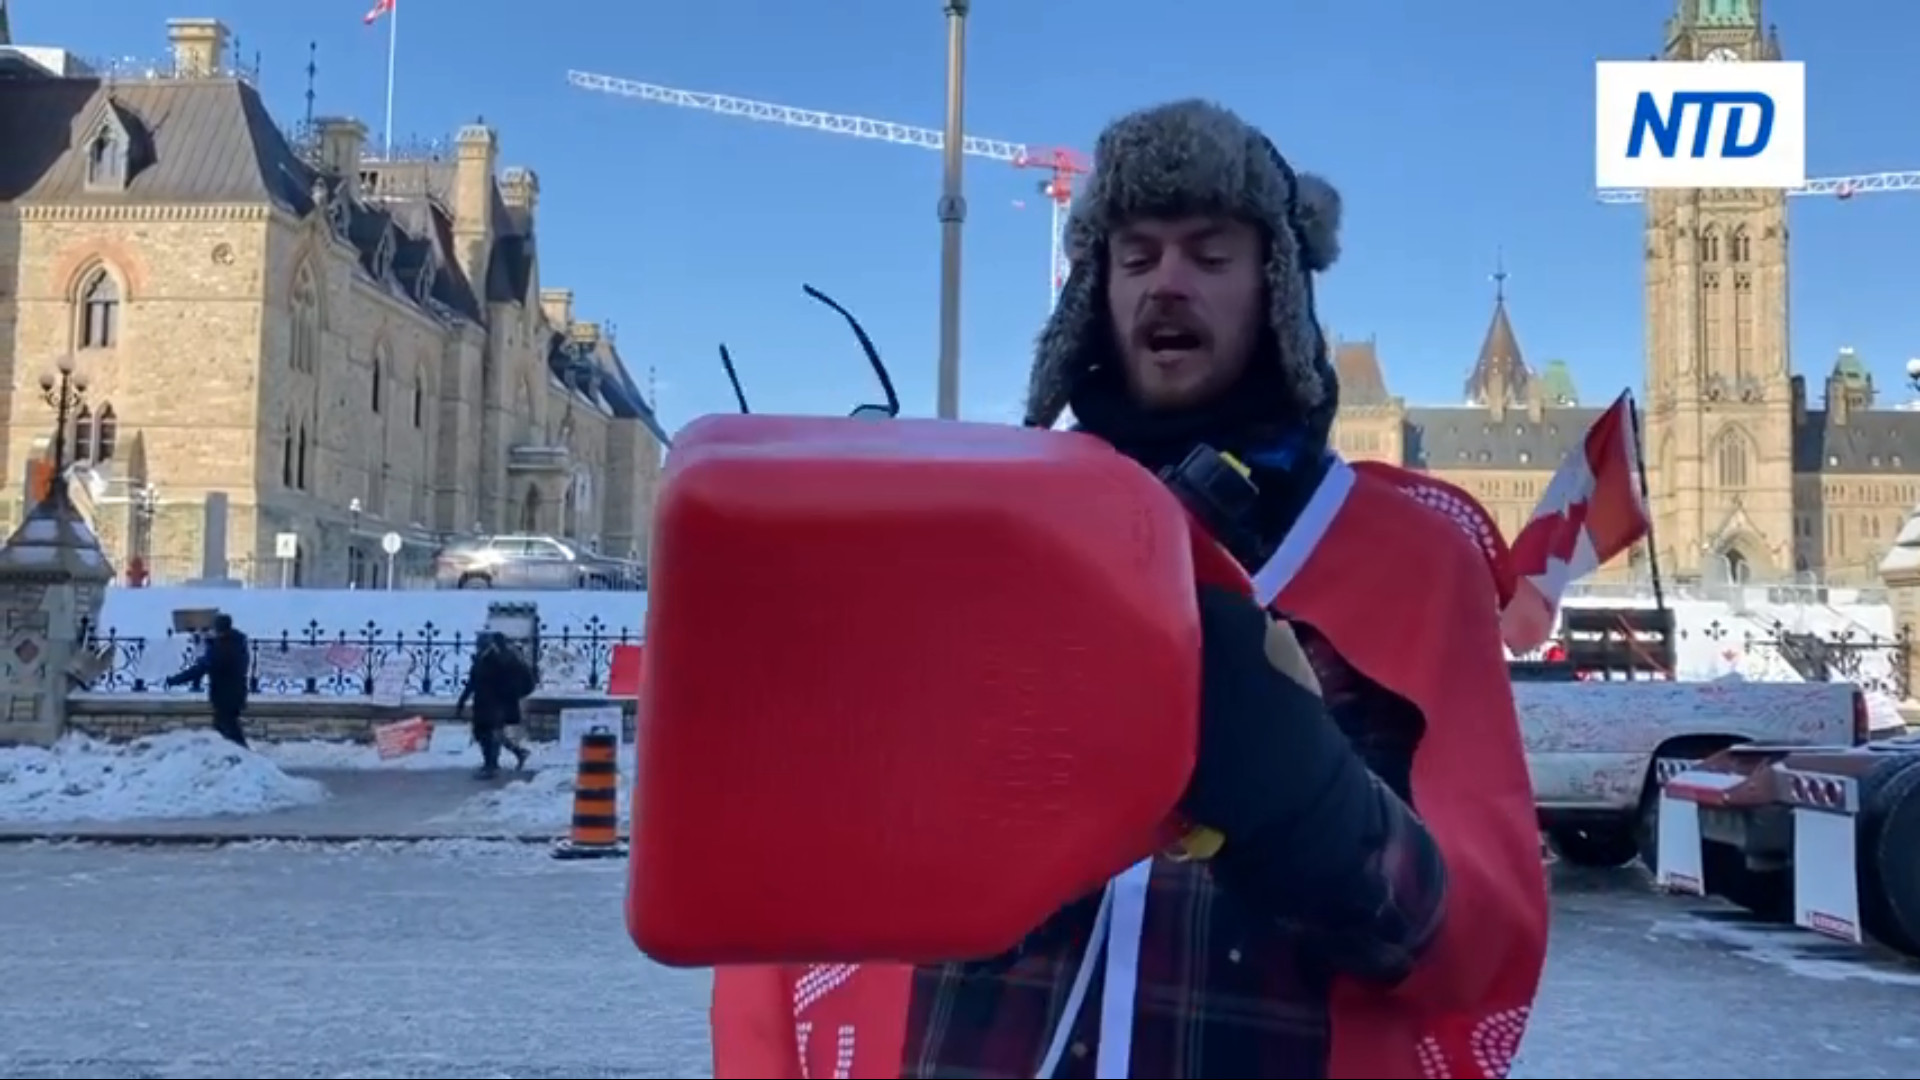 Ottawa: Người biểu tình đi vòng quanh với thùng nhiên liệu rỗng sau khi bị cảnh sát đe dọa bắt giữ